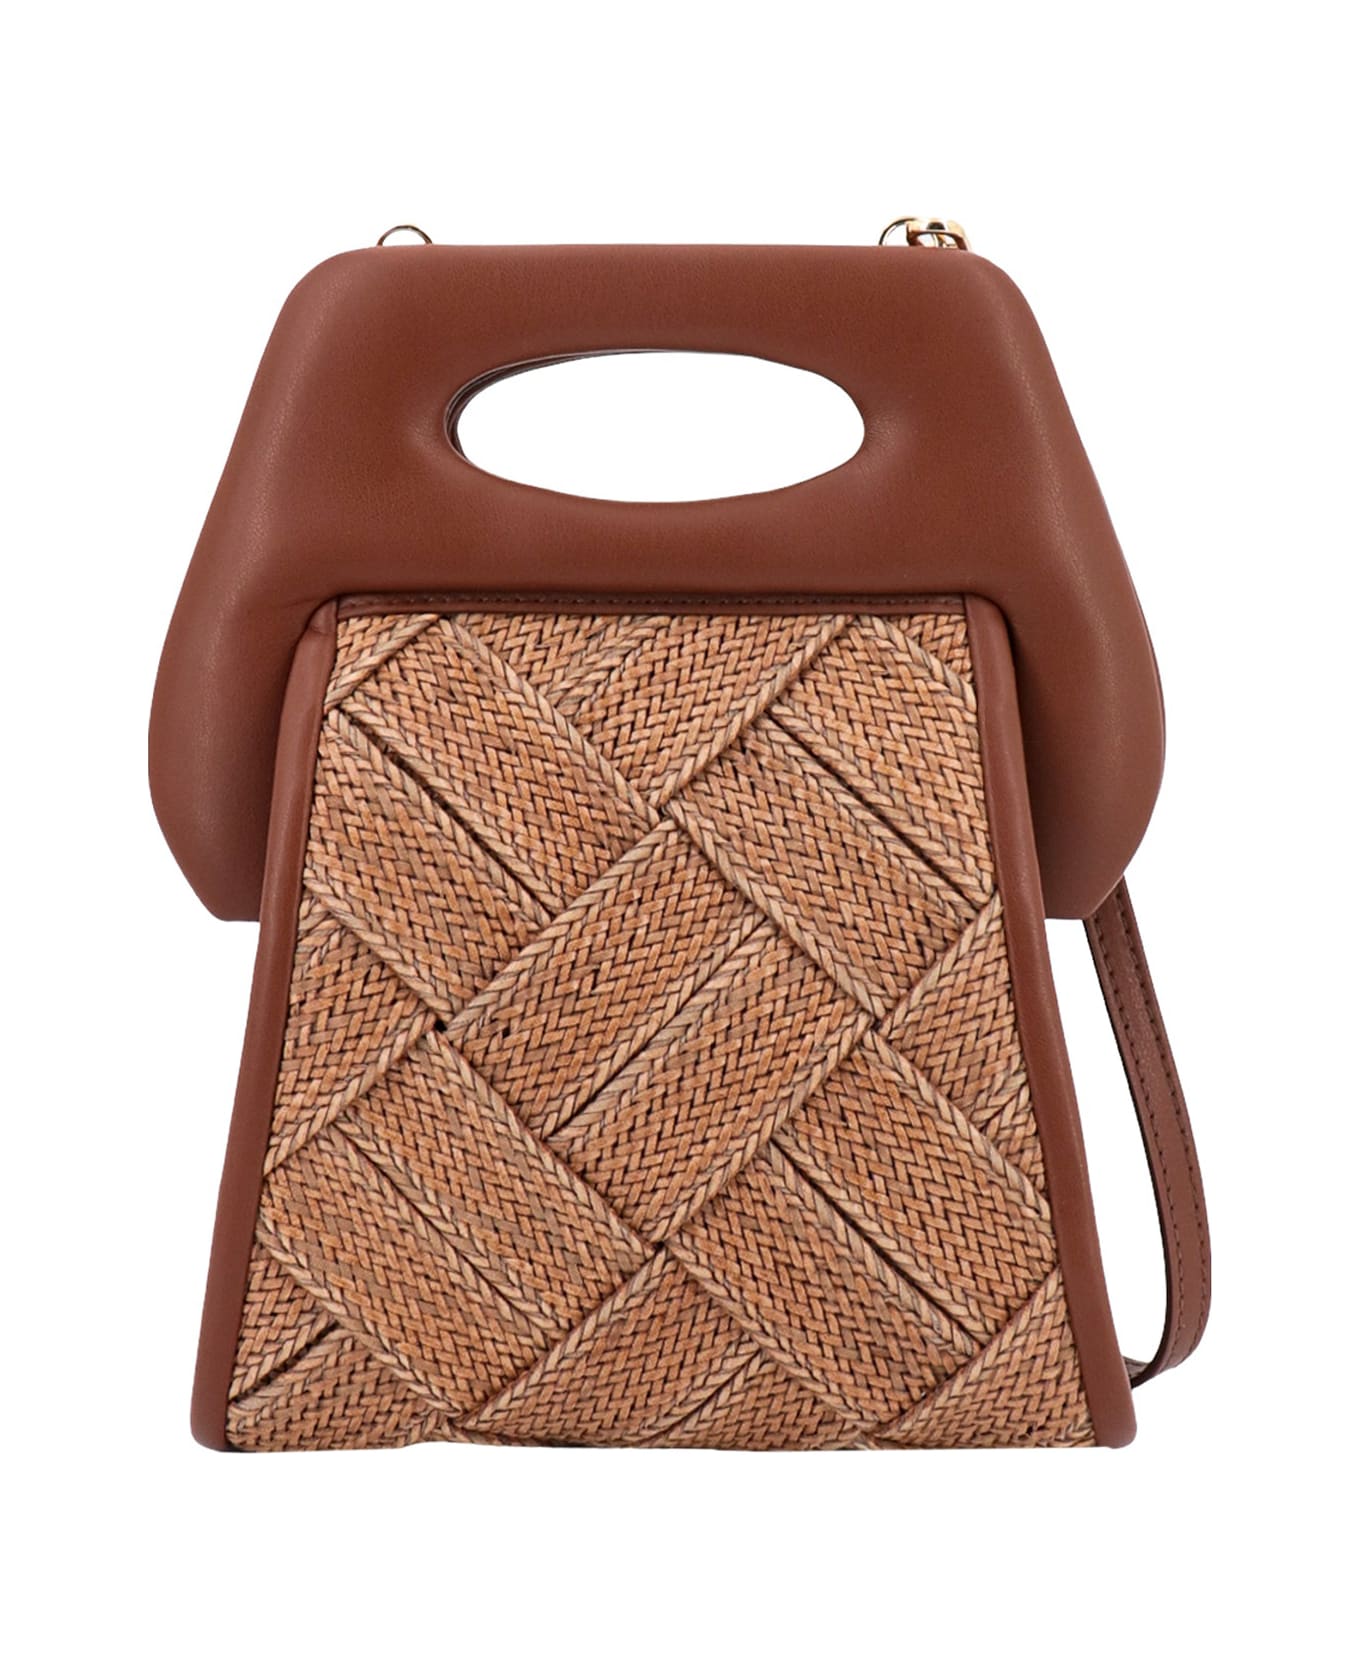 THEMOIRè Clori Handbag - Brown